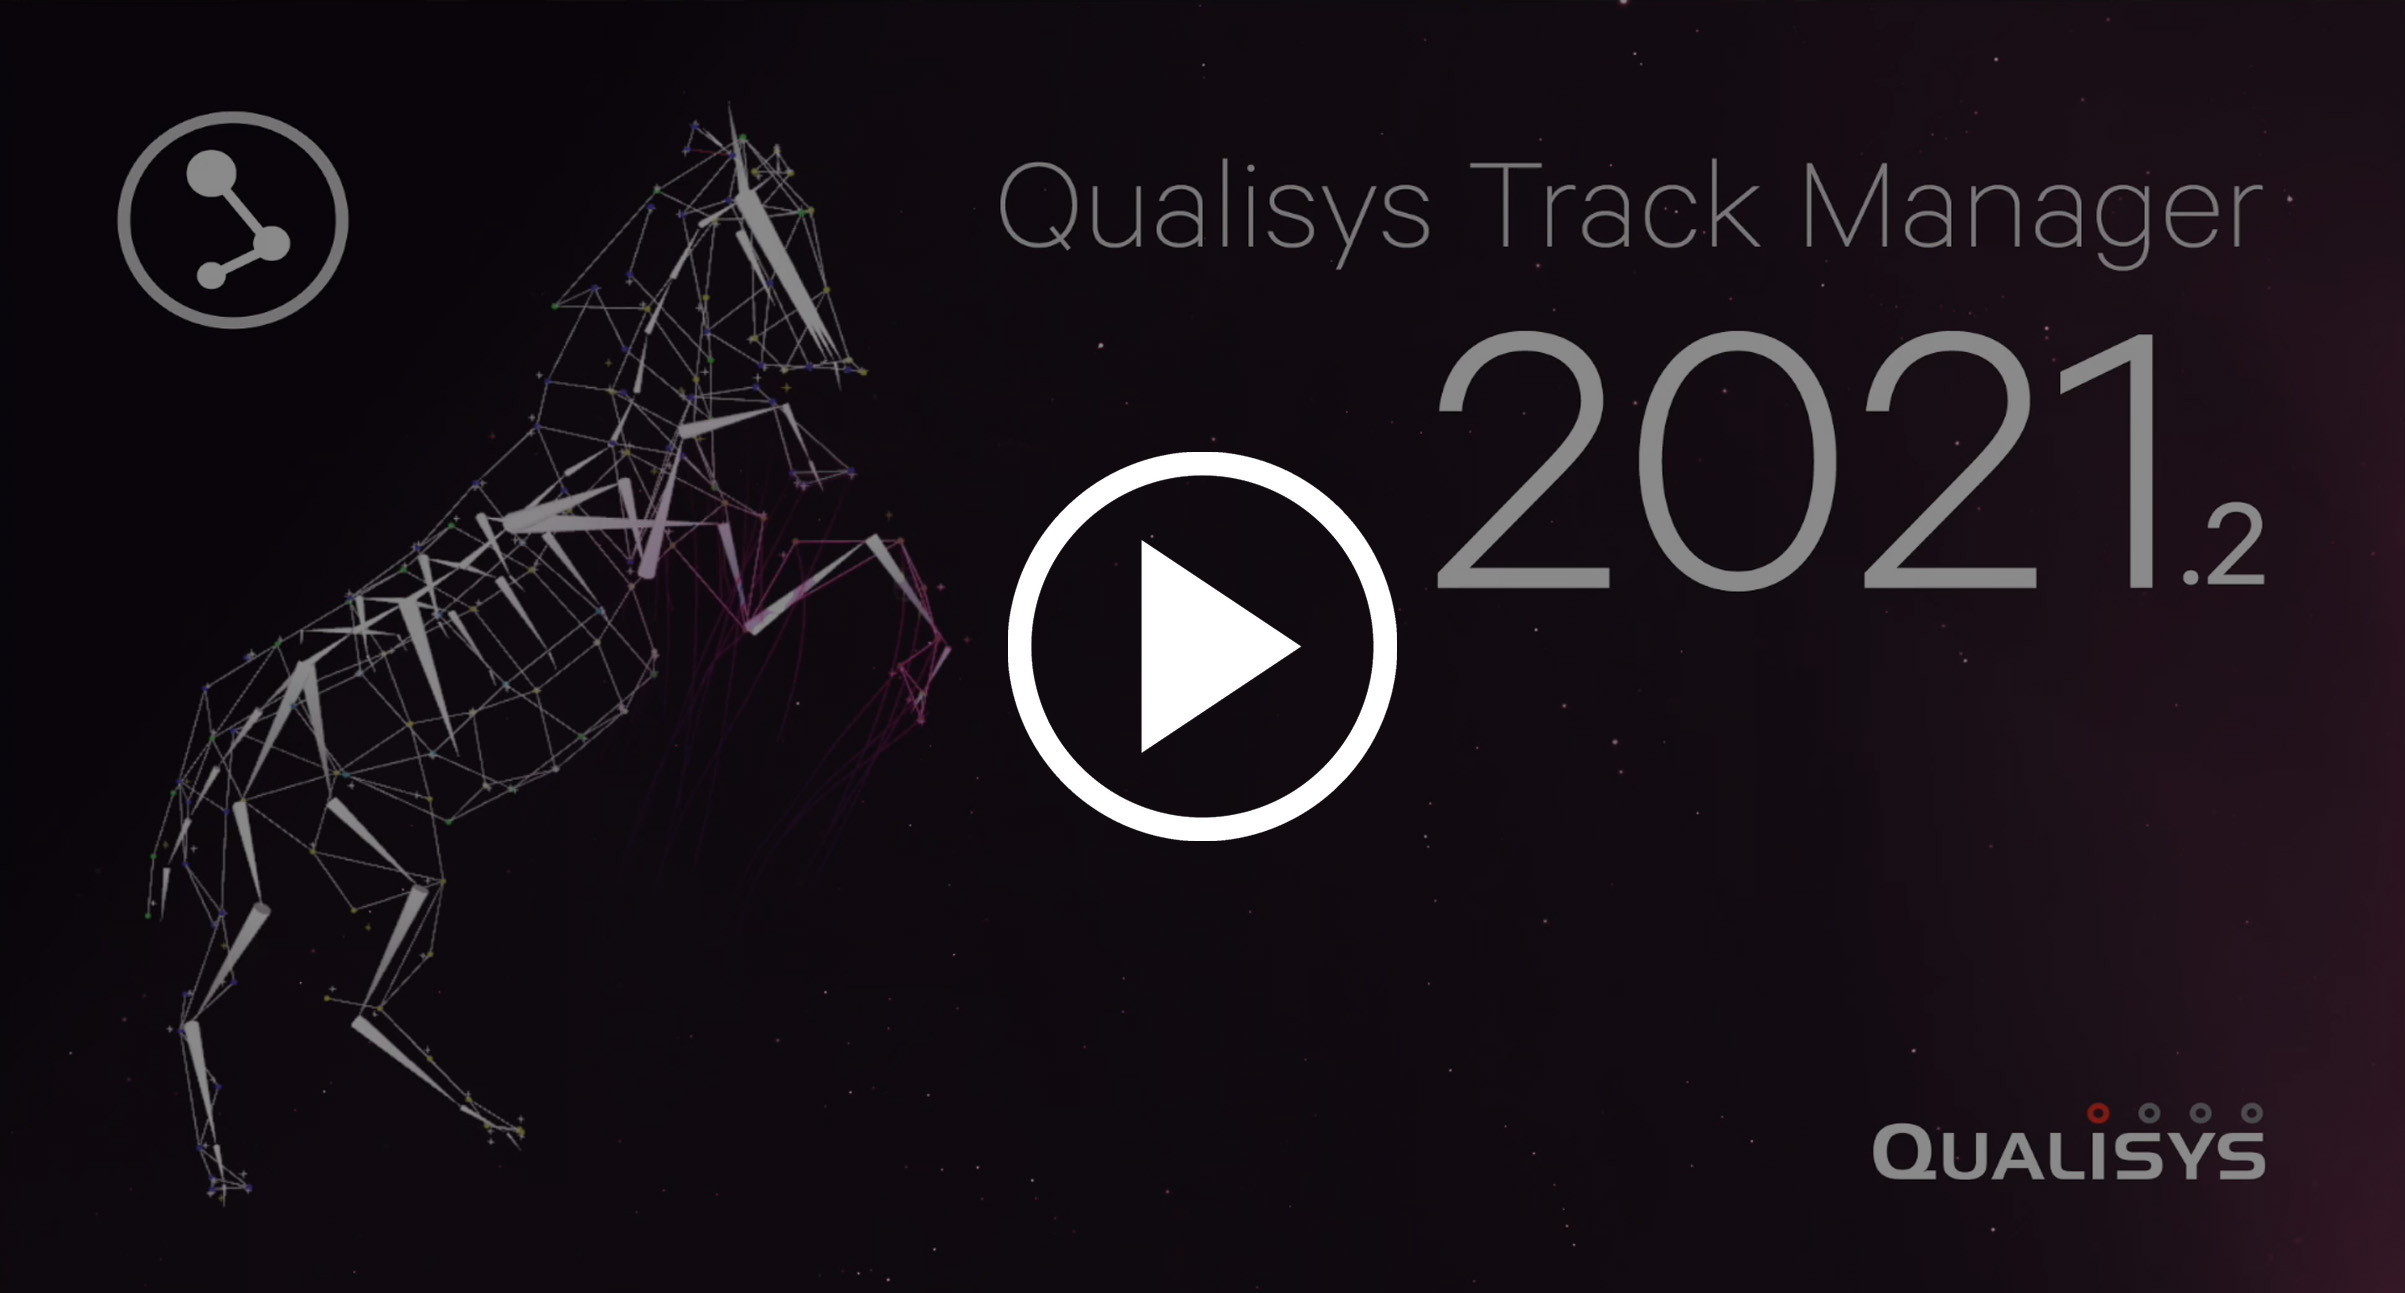 Qualisys-QTM-Track-Manager-funkcjonalności nowe-2021_2-Skyfi_pl